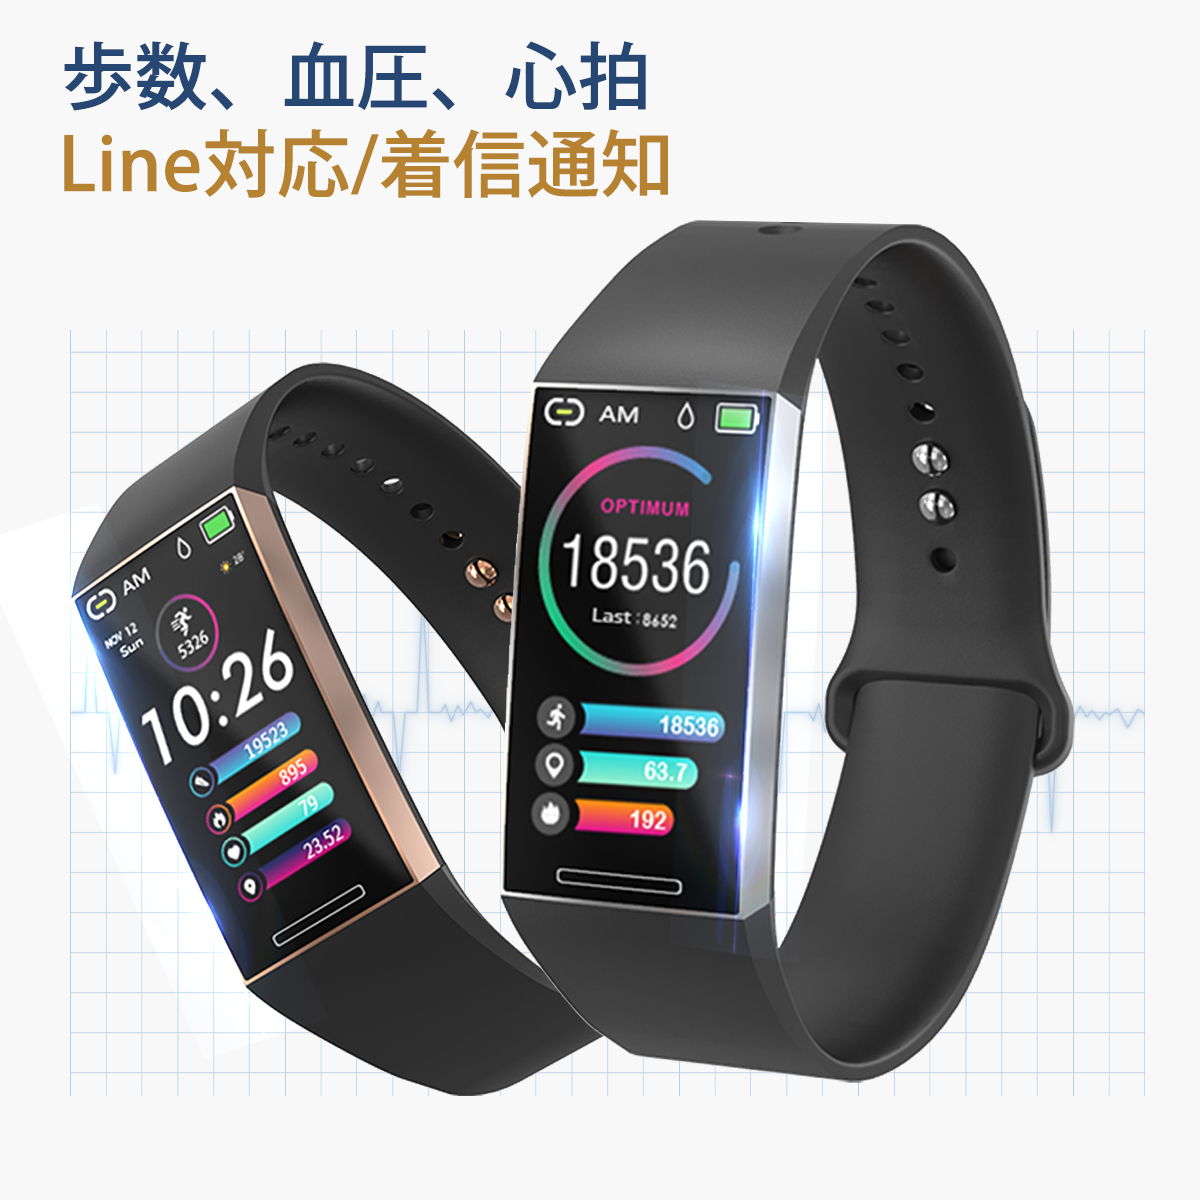 スマートウォッチ iphone 対応 android 対応 line 対応 活動量計 心拍計 血圧計 IP67防水 腕時計 レデ